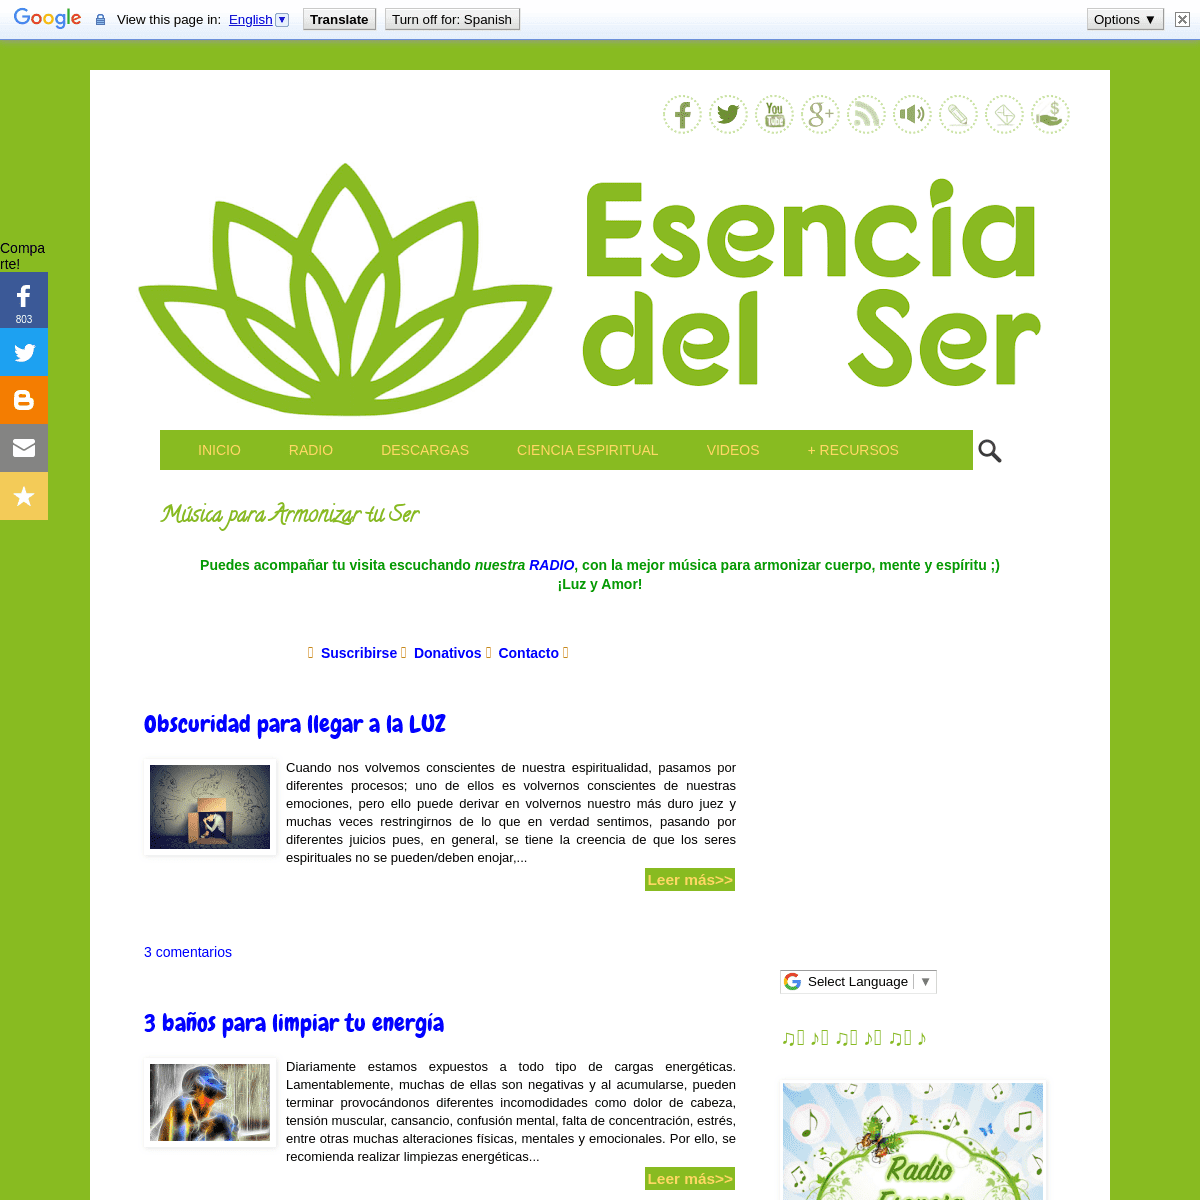 A complete backup of esenciadelser.com